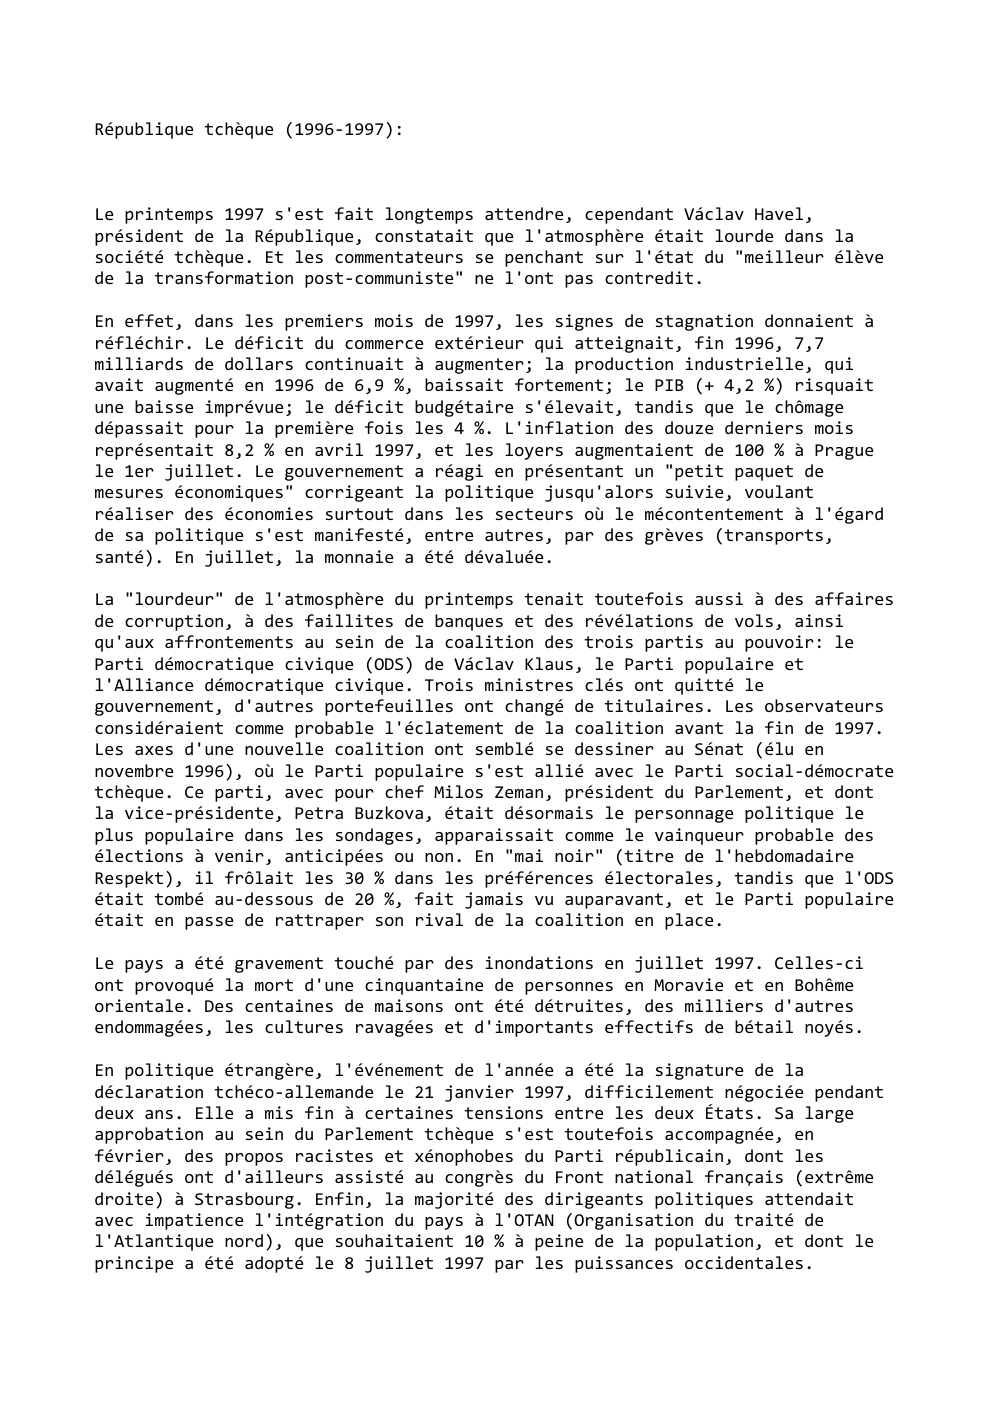 Prévisualisation du document République tchèque (1996-1997):

Le printemps 1997 s'est fait longtemps attendre, cependant Václav Havel,
président de la République, constatait que l'atmosphère...